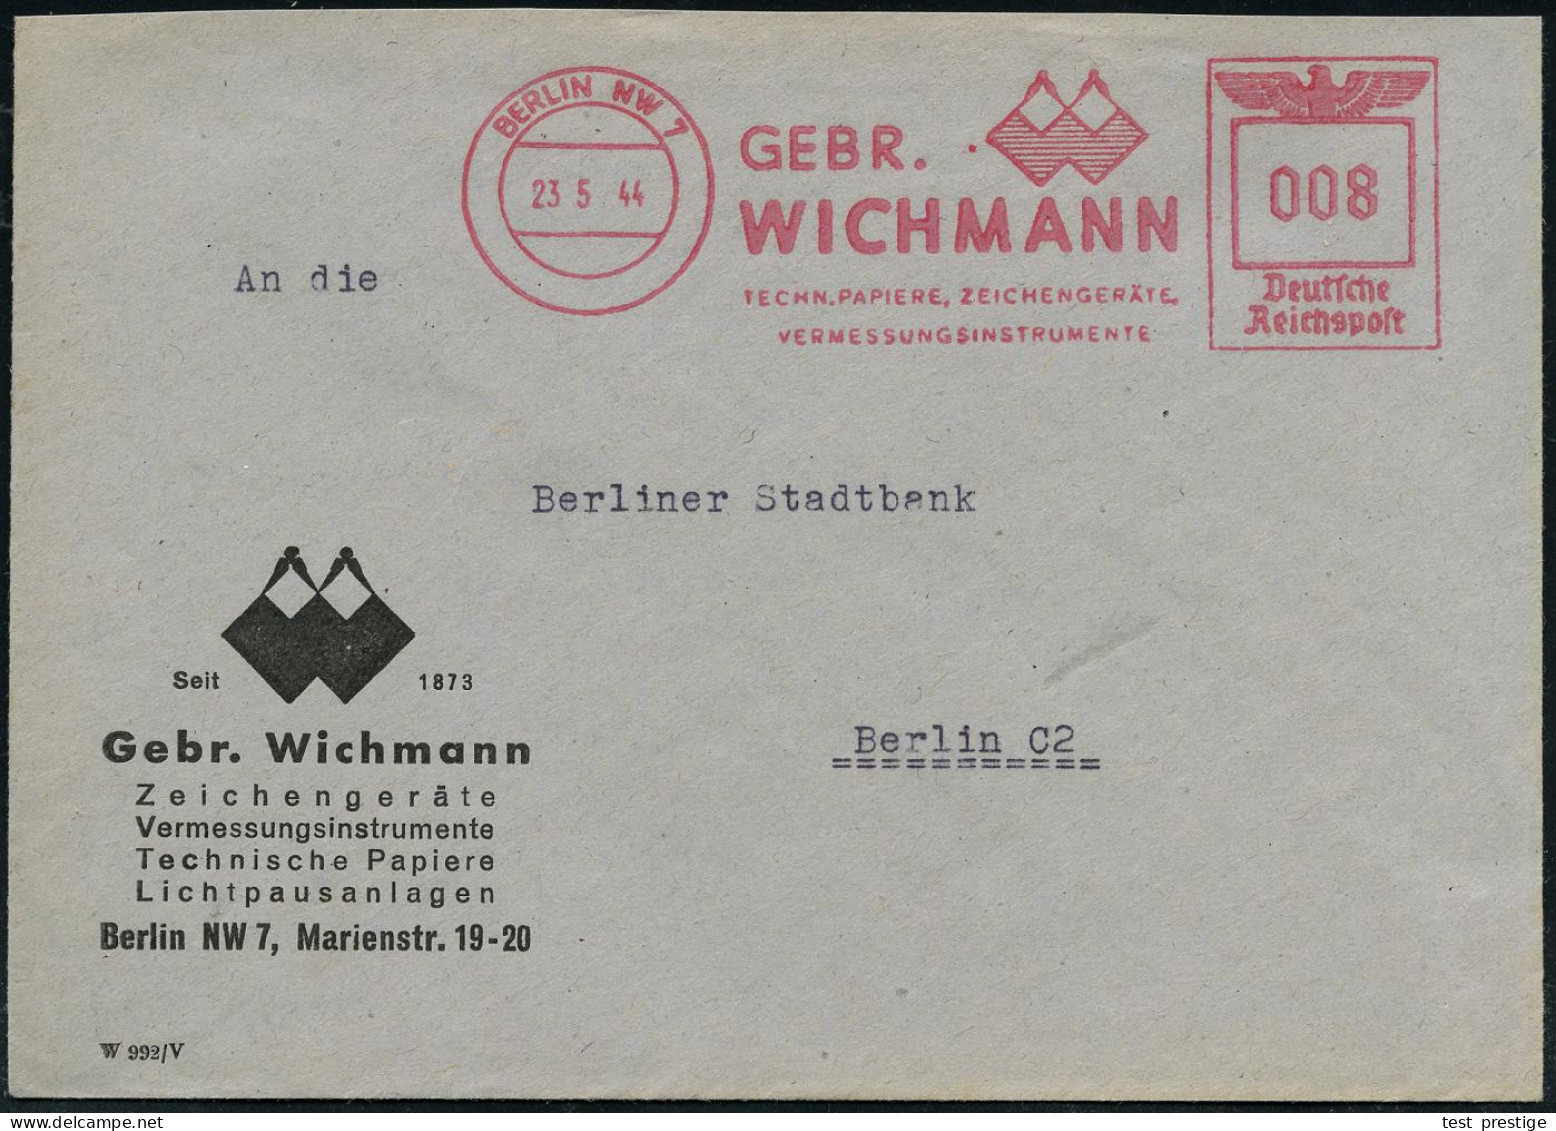 BERLIN NW7/ GEBR./ WICHMANN/ TECHN.PAPIERE, ZEICHENGERÄTE/ VERMESSUNGSINSTRUMENTE 1944 (25.5.) AFS Francotyp "Reichsadle - Géographie